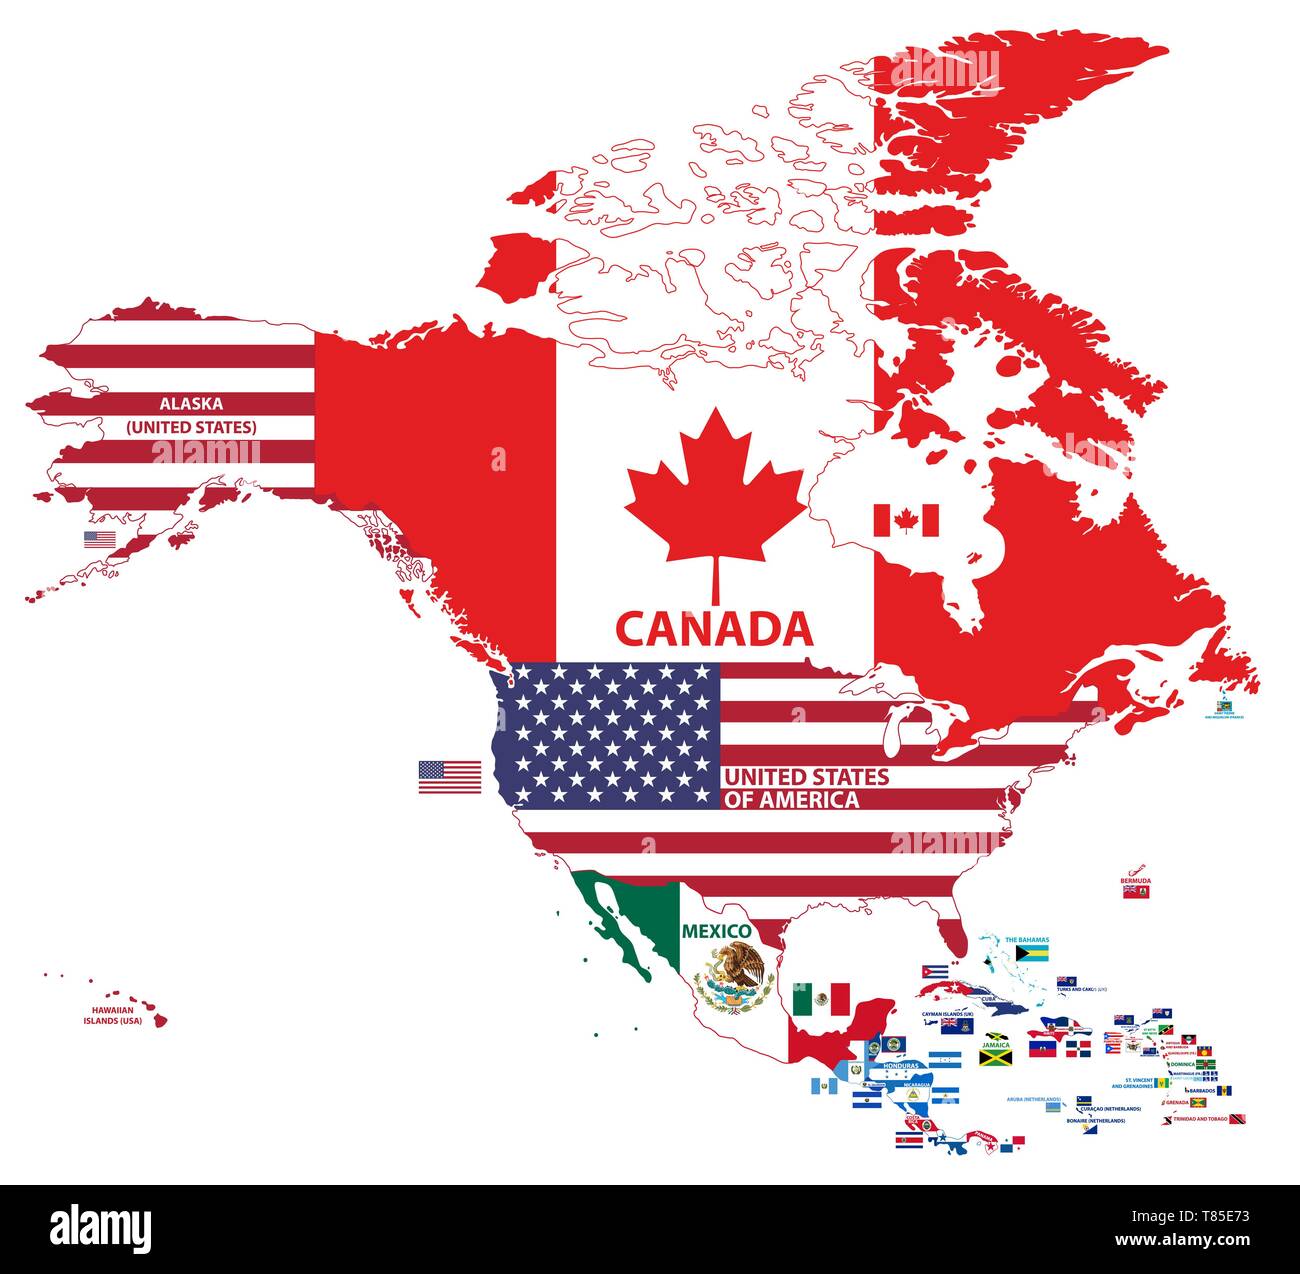 Vector illustration de la carte de l'Amérique du Nord (Nord de l'Amérique latine, notamment l'Amérique centrale et des Caraïbes) avec les noms des pays et drapeaux de pays Illustration de Vecteur